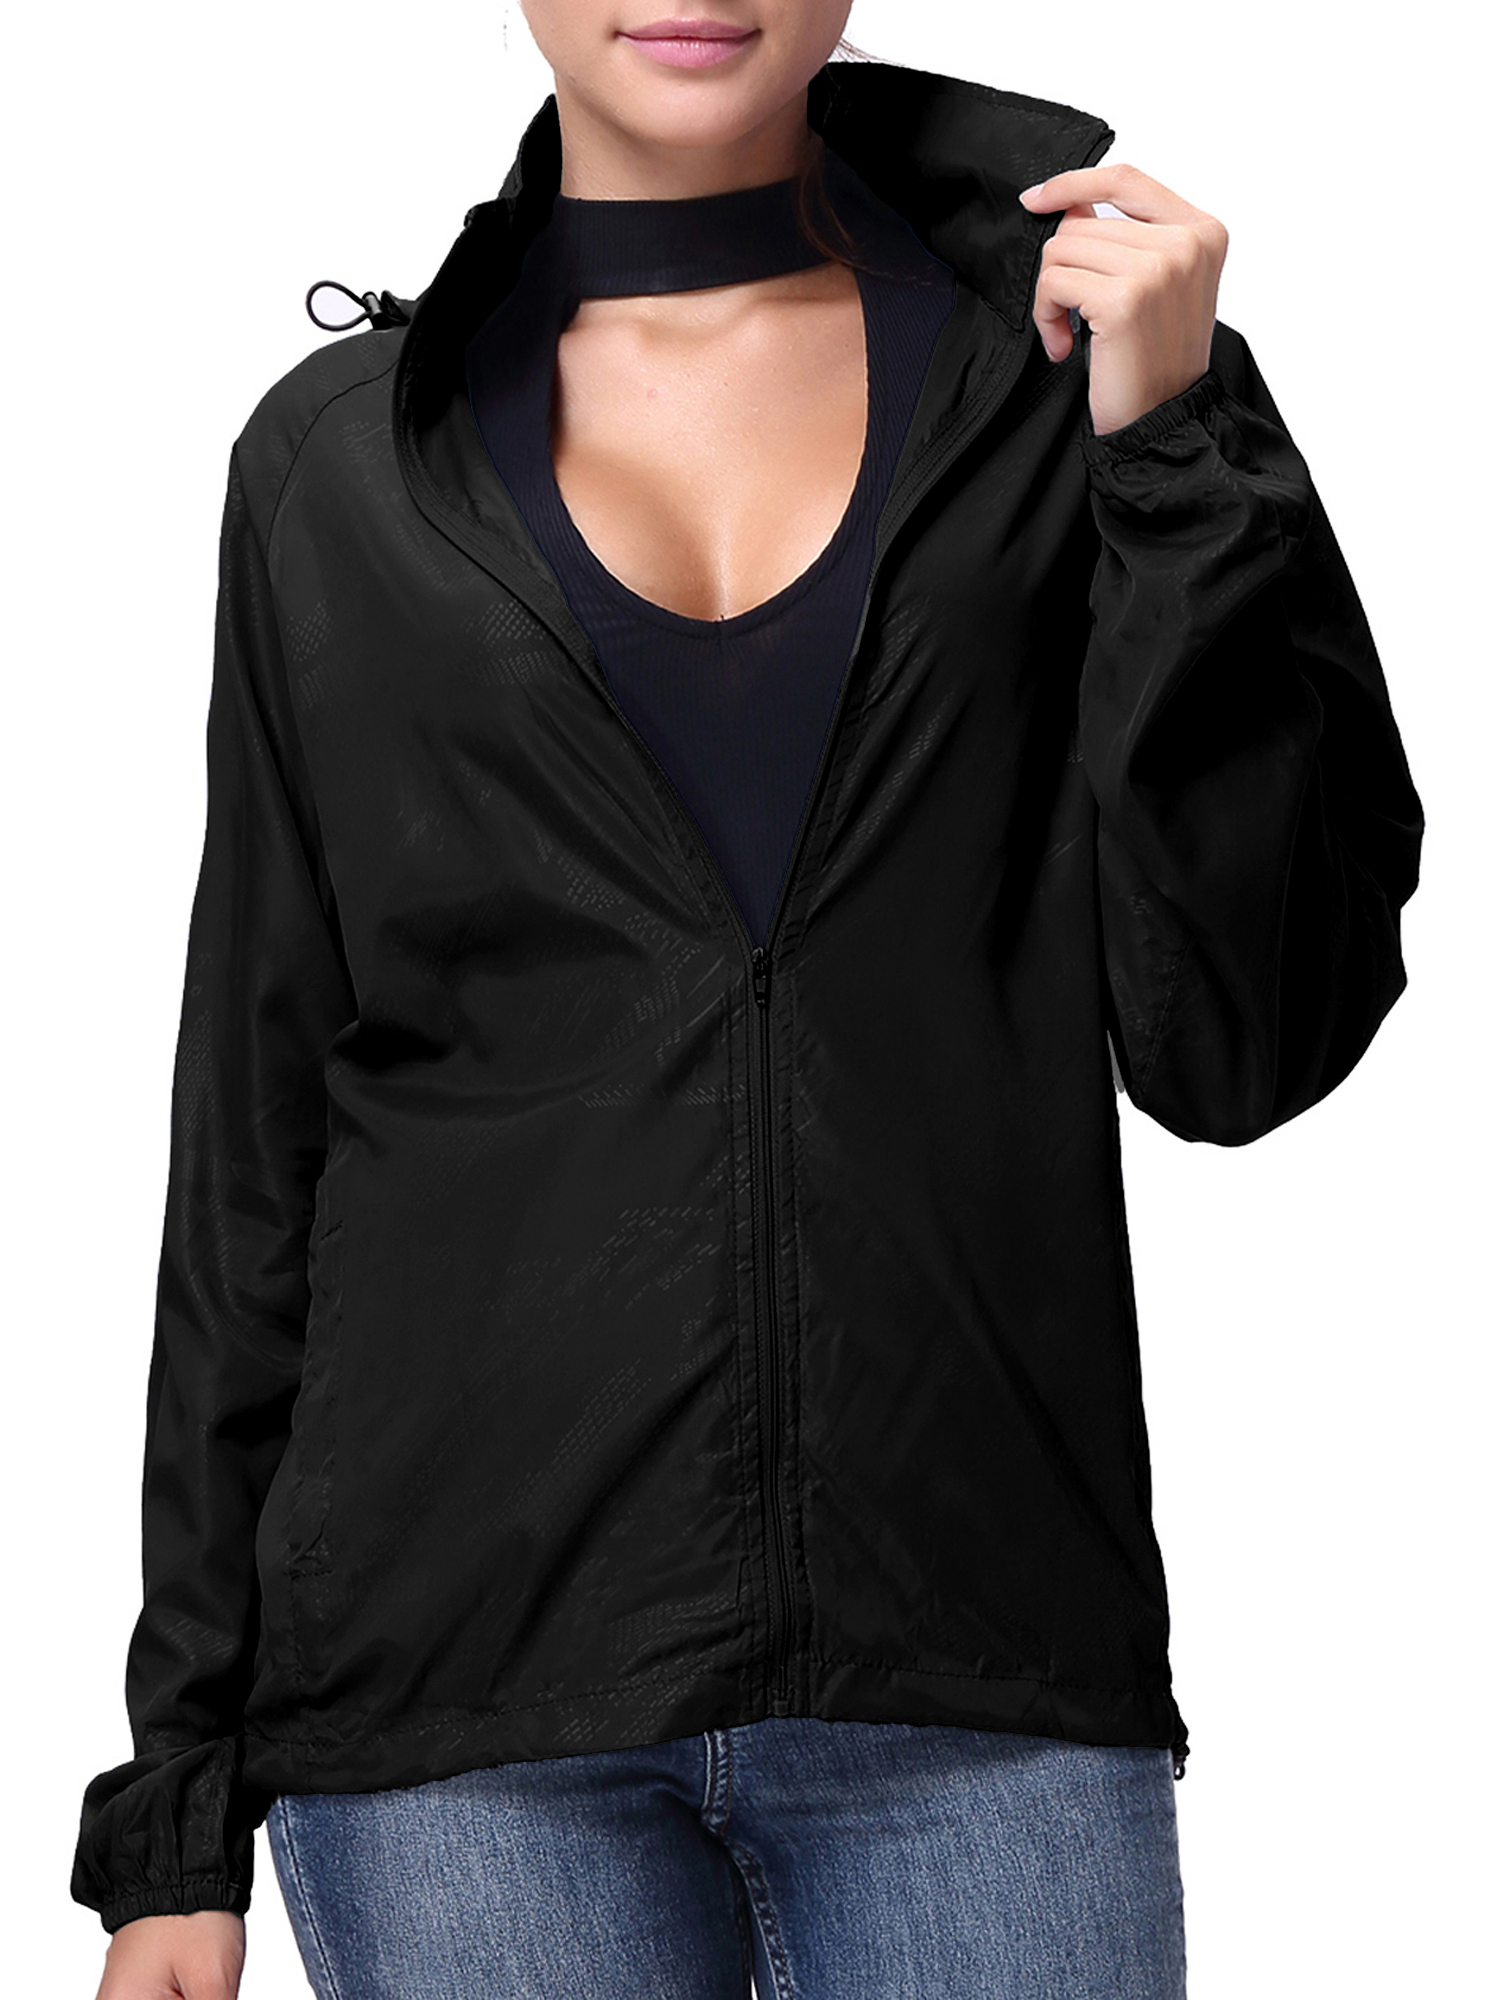 LELINTA Women Nylon Windbreaker Jacket Sport Casual Lightweight Zipper Hooded Outdoor Jacket, Black - image 1 of 9